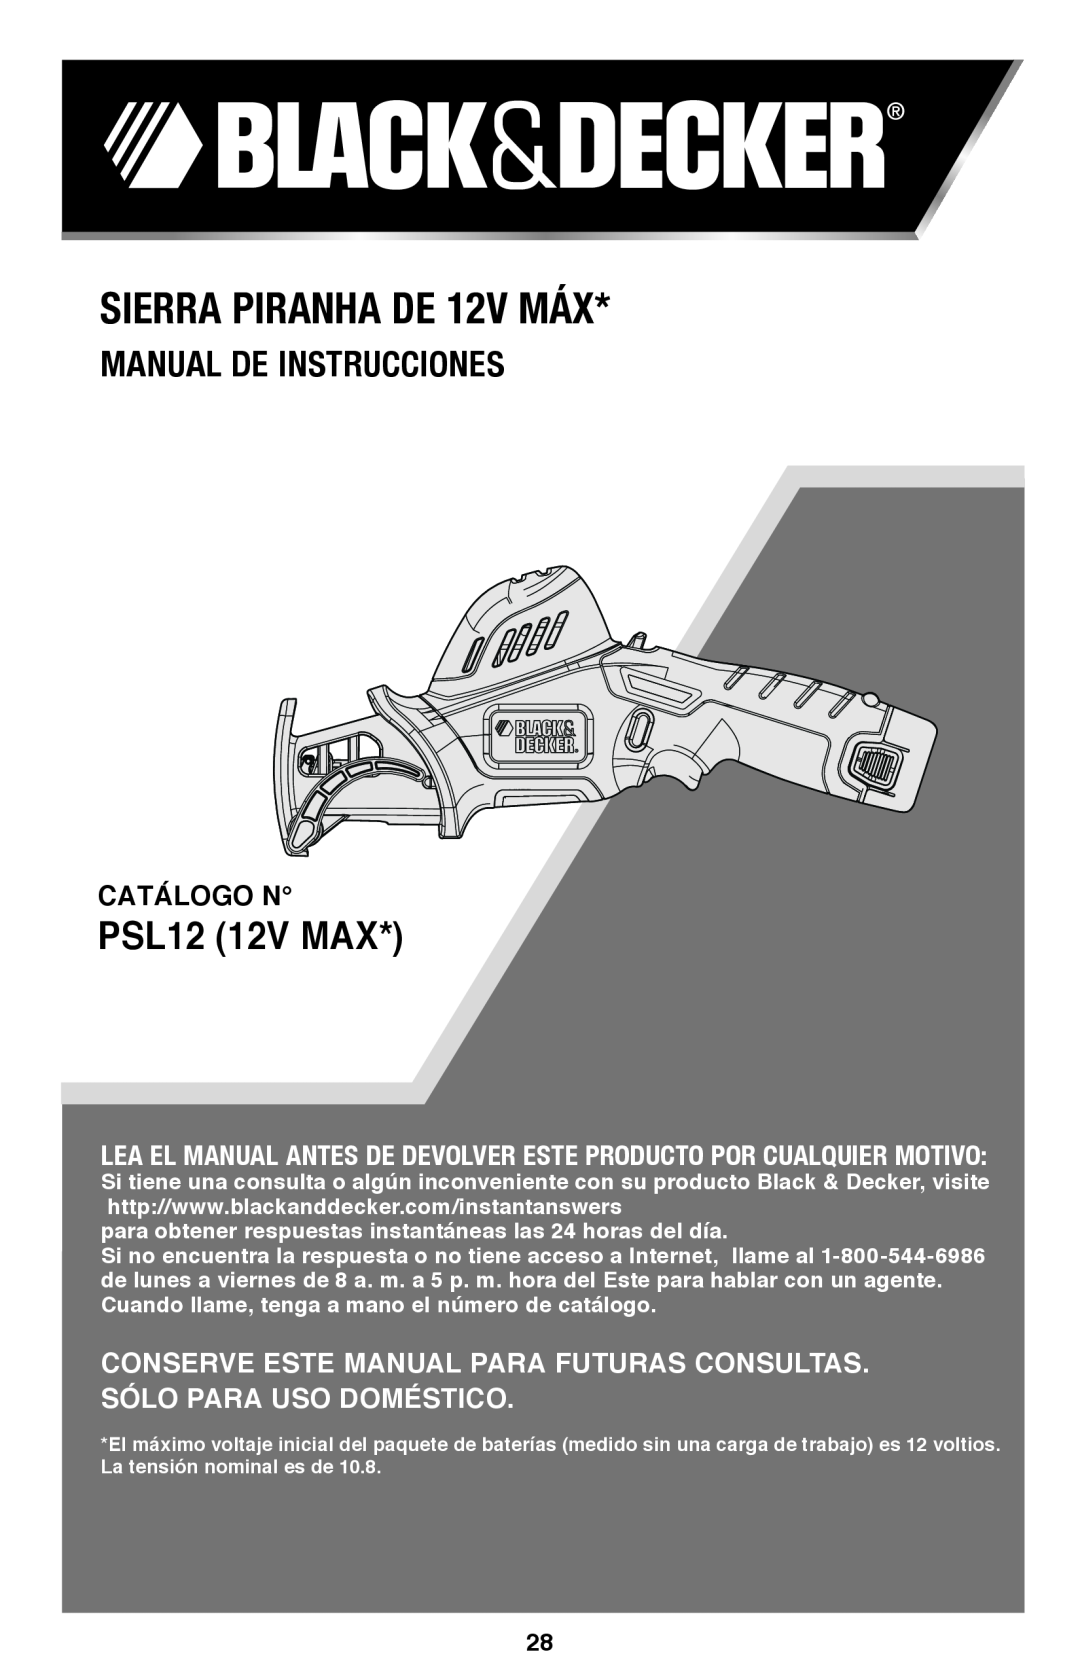 Black & Decker instruction manual Sierra Piranha DE 12V MÁX, Manual De Instrucciones, PSL12 12V MAX 